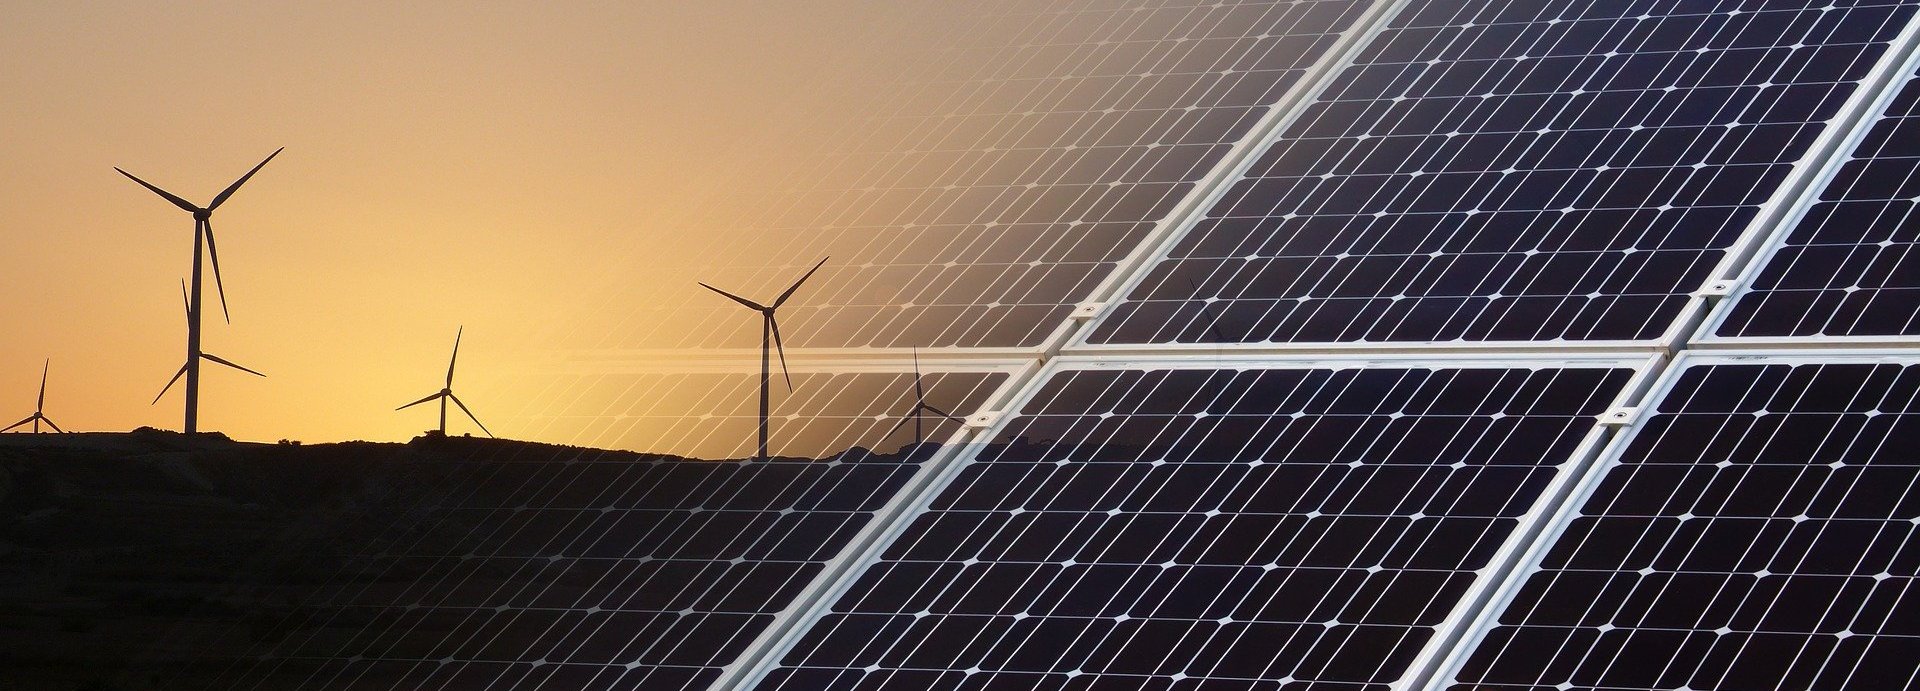 Solarkollektoren eingeblendet im Vordergrund mit Windrädern vor einem Sonnenuntergang am Horizont